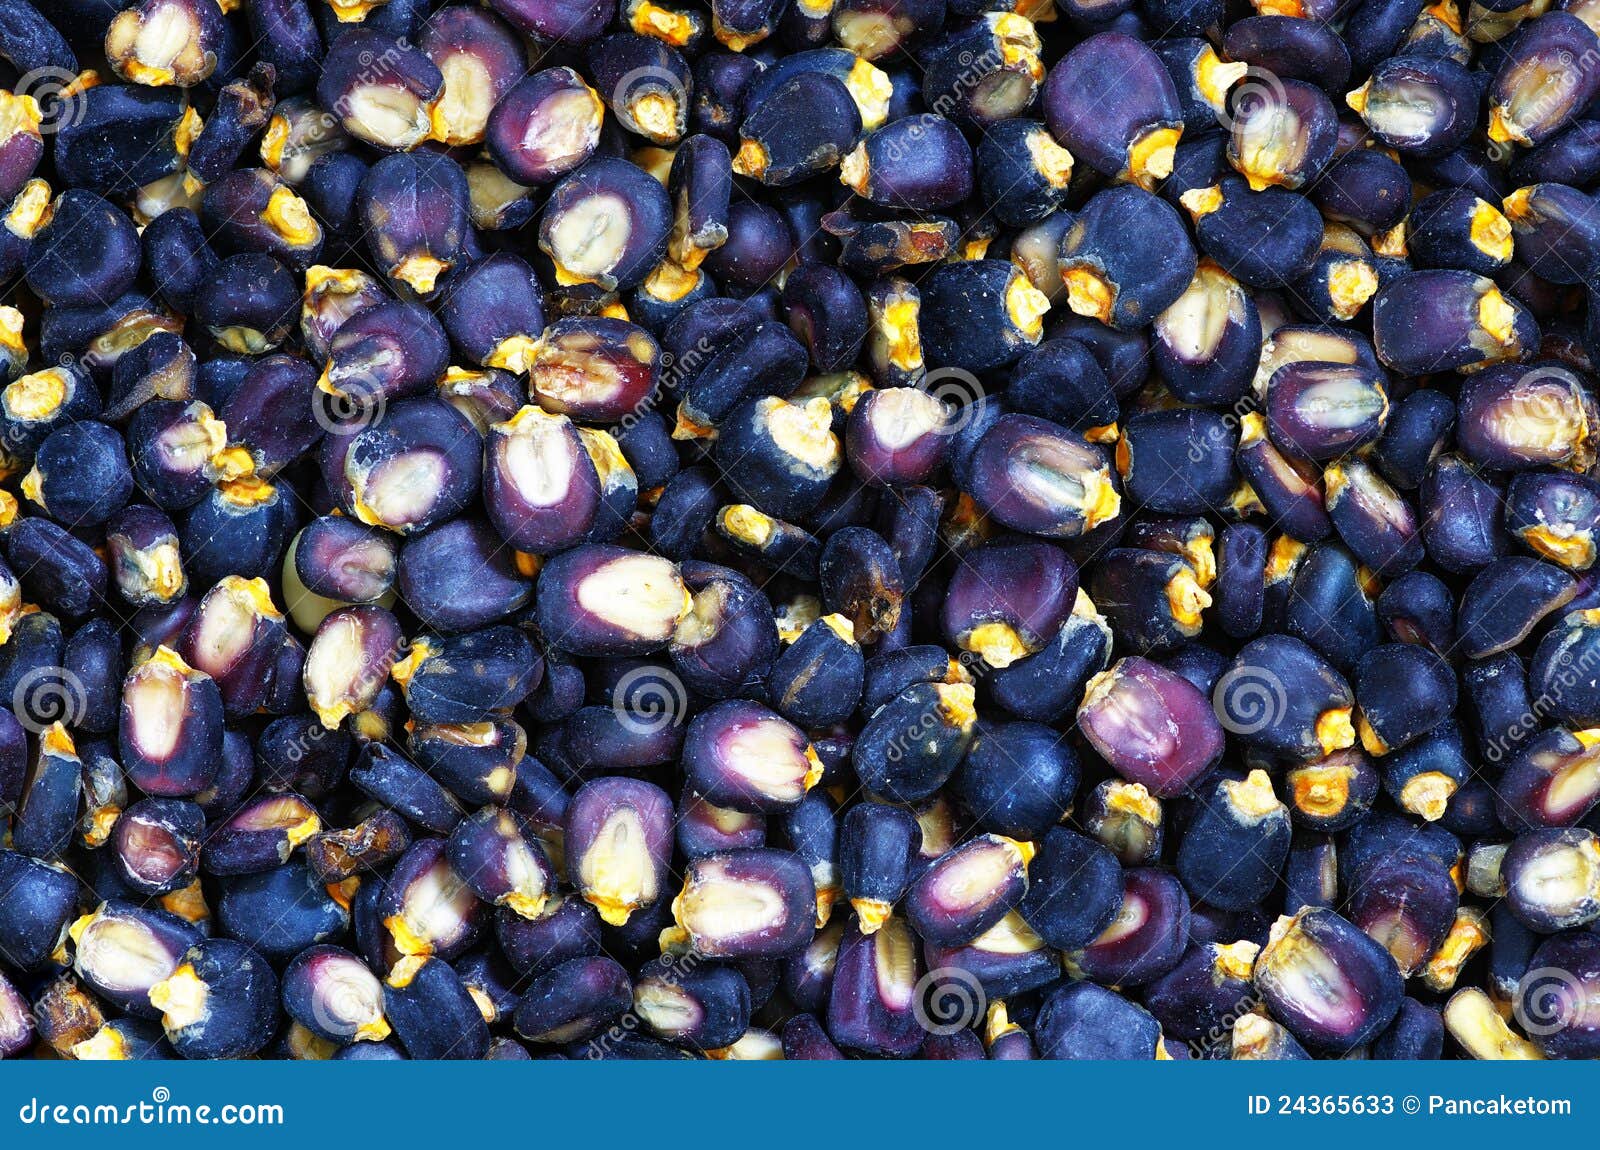 蓝色玉米 库存图片. 图片 包括有 墨西哥, 筹码, 烹调, 有机, 黑暗, 收获, 成份, 庄稼, 蓝色 - 48593913